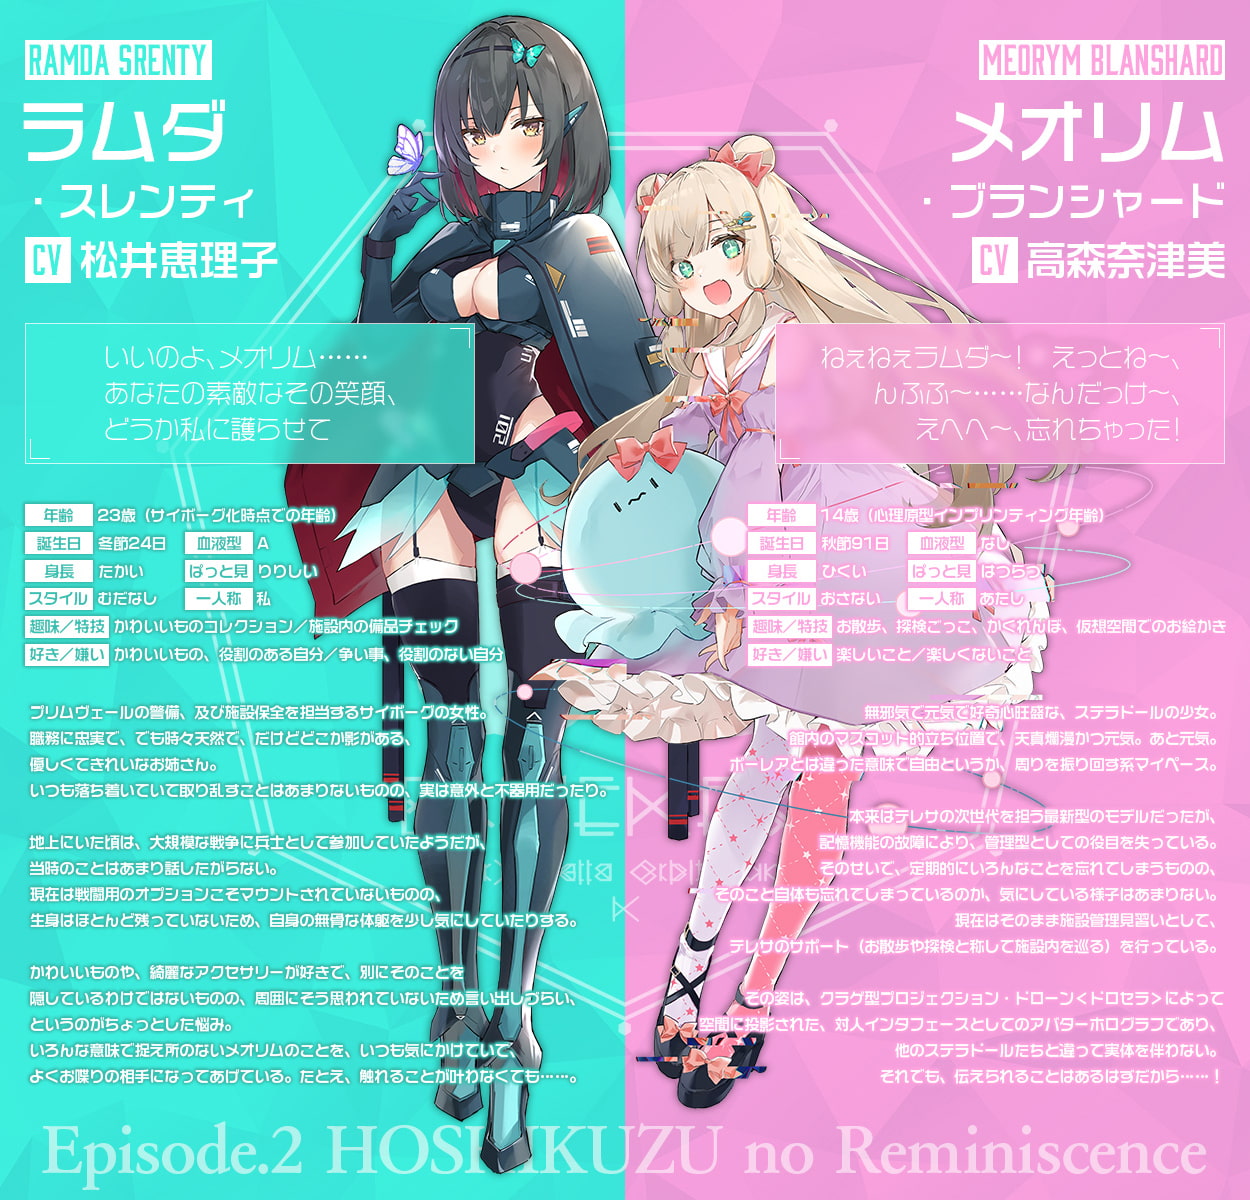 少女軌道のリユニオン Episode1『embrace device』